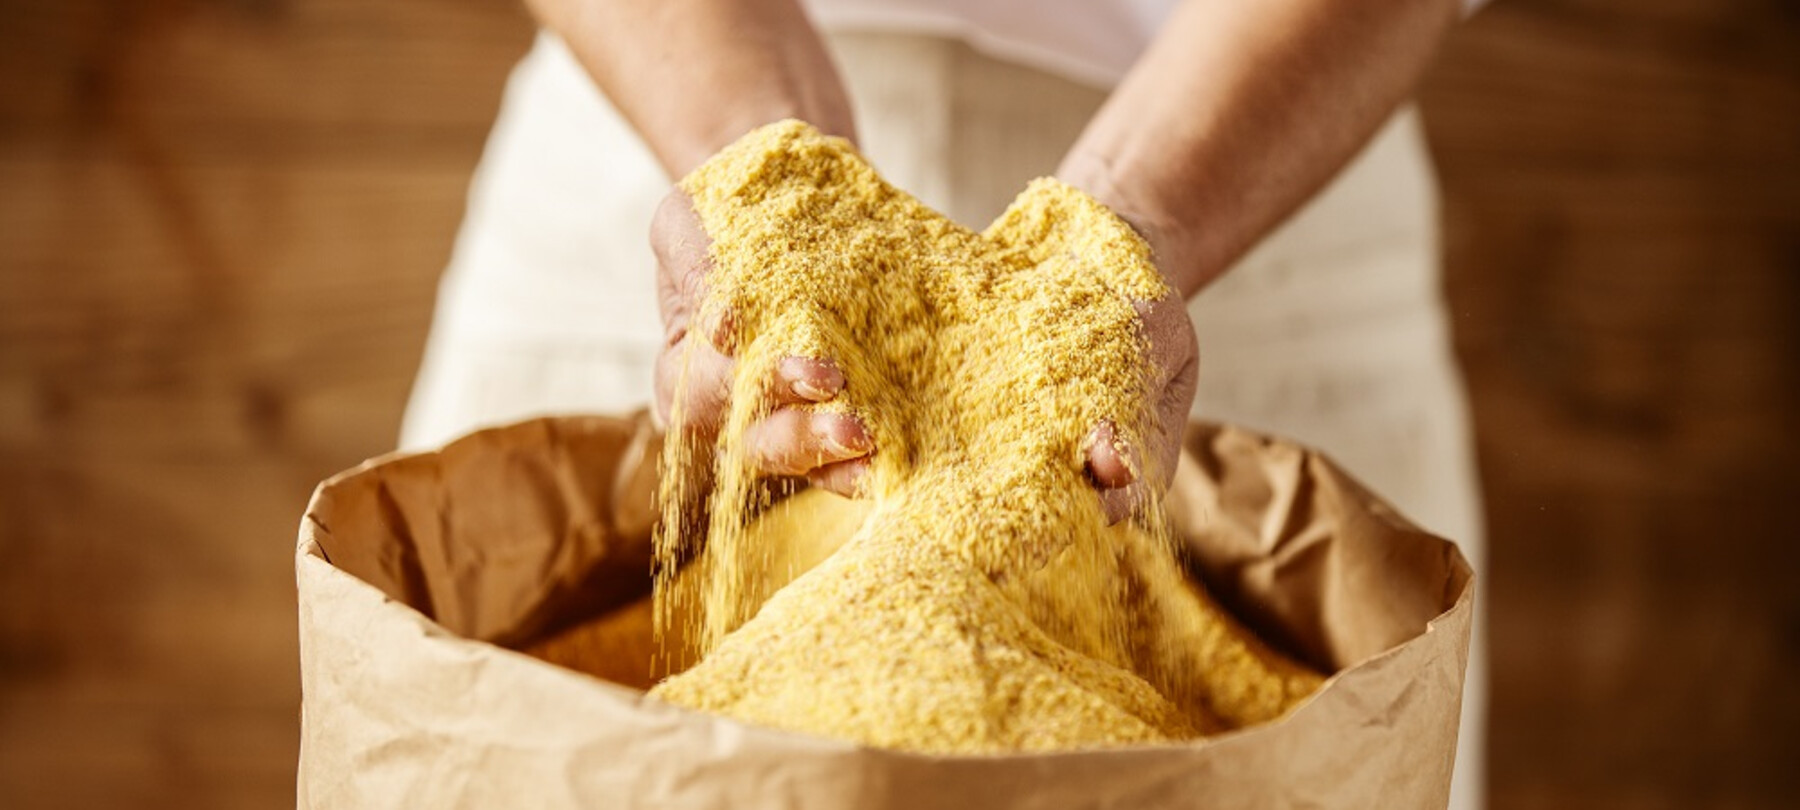 Żółta mąka ze Storo: złoto Trentino